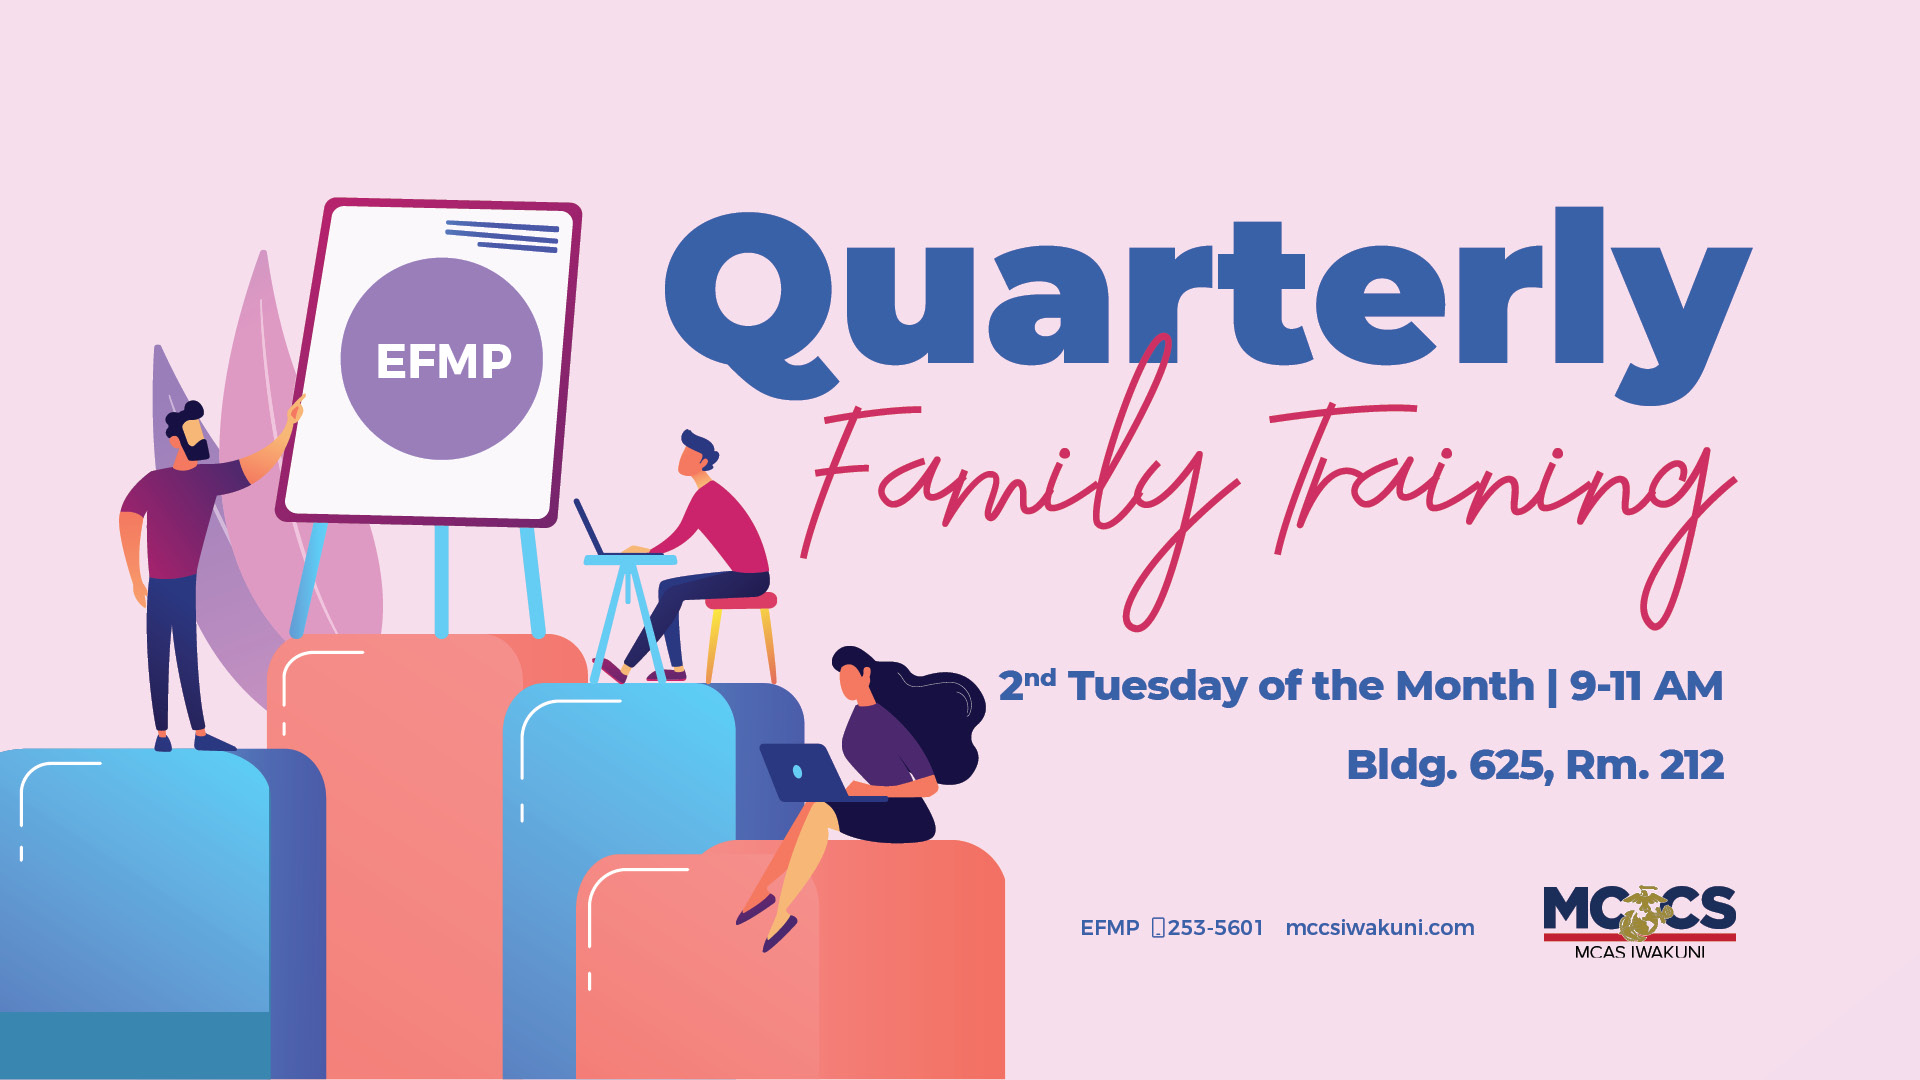 EFMP Quarterly Family Training